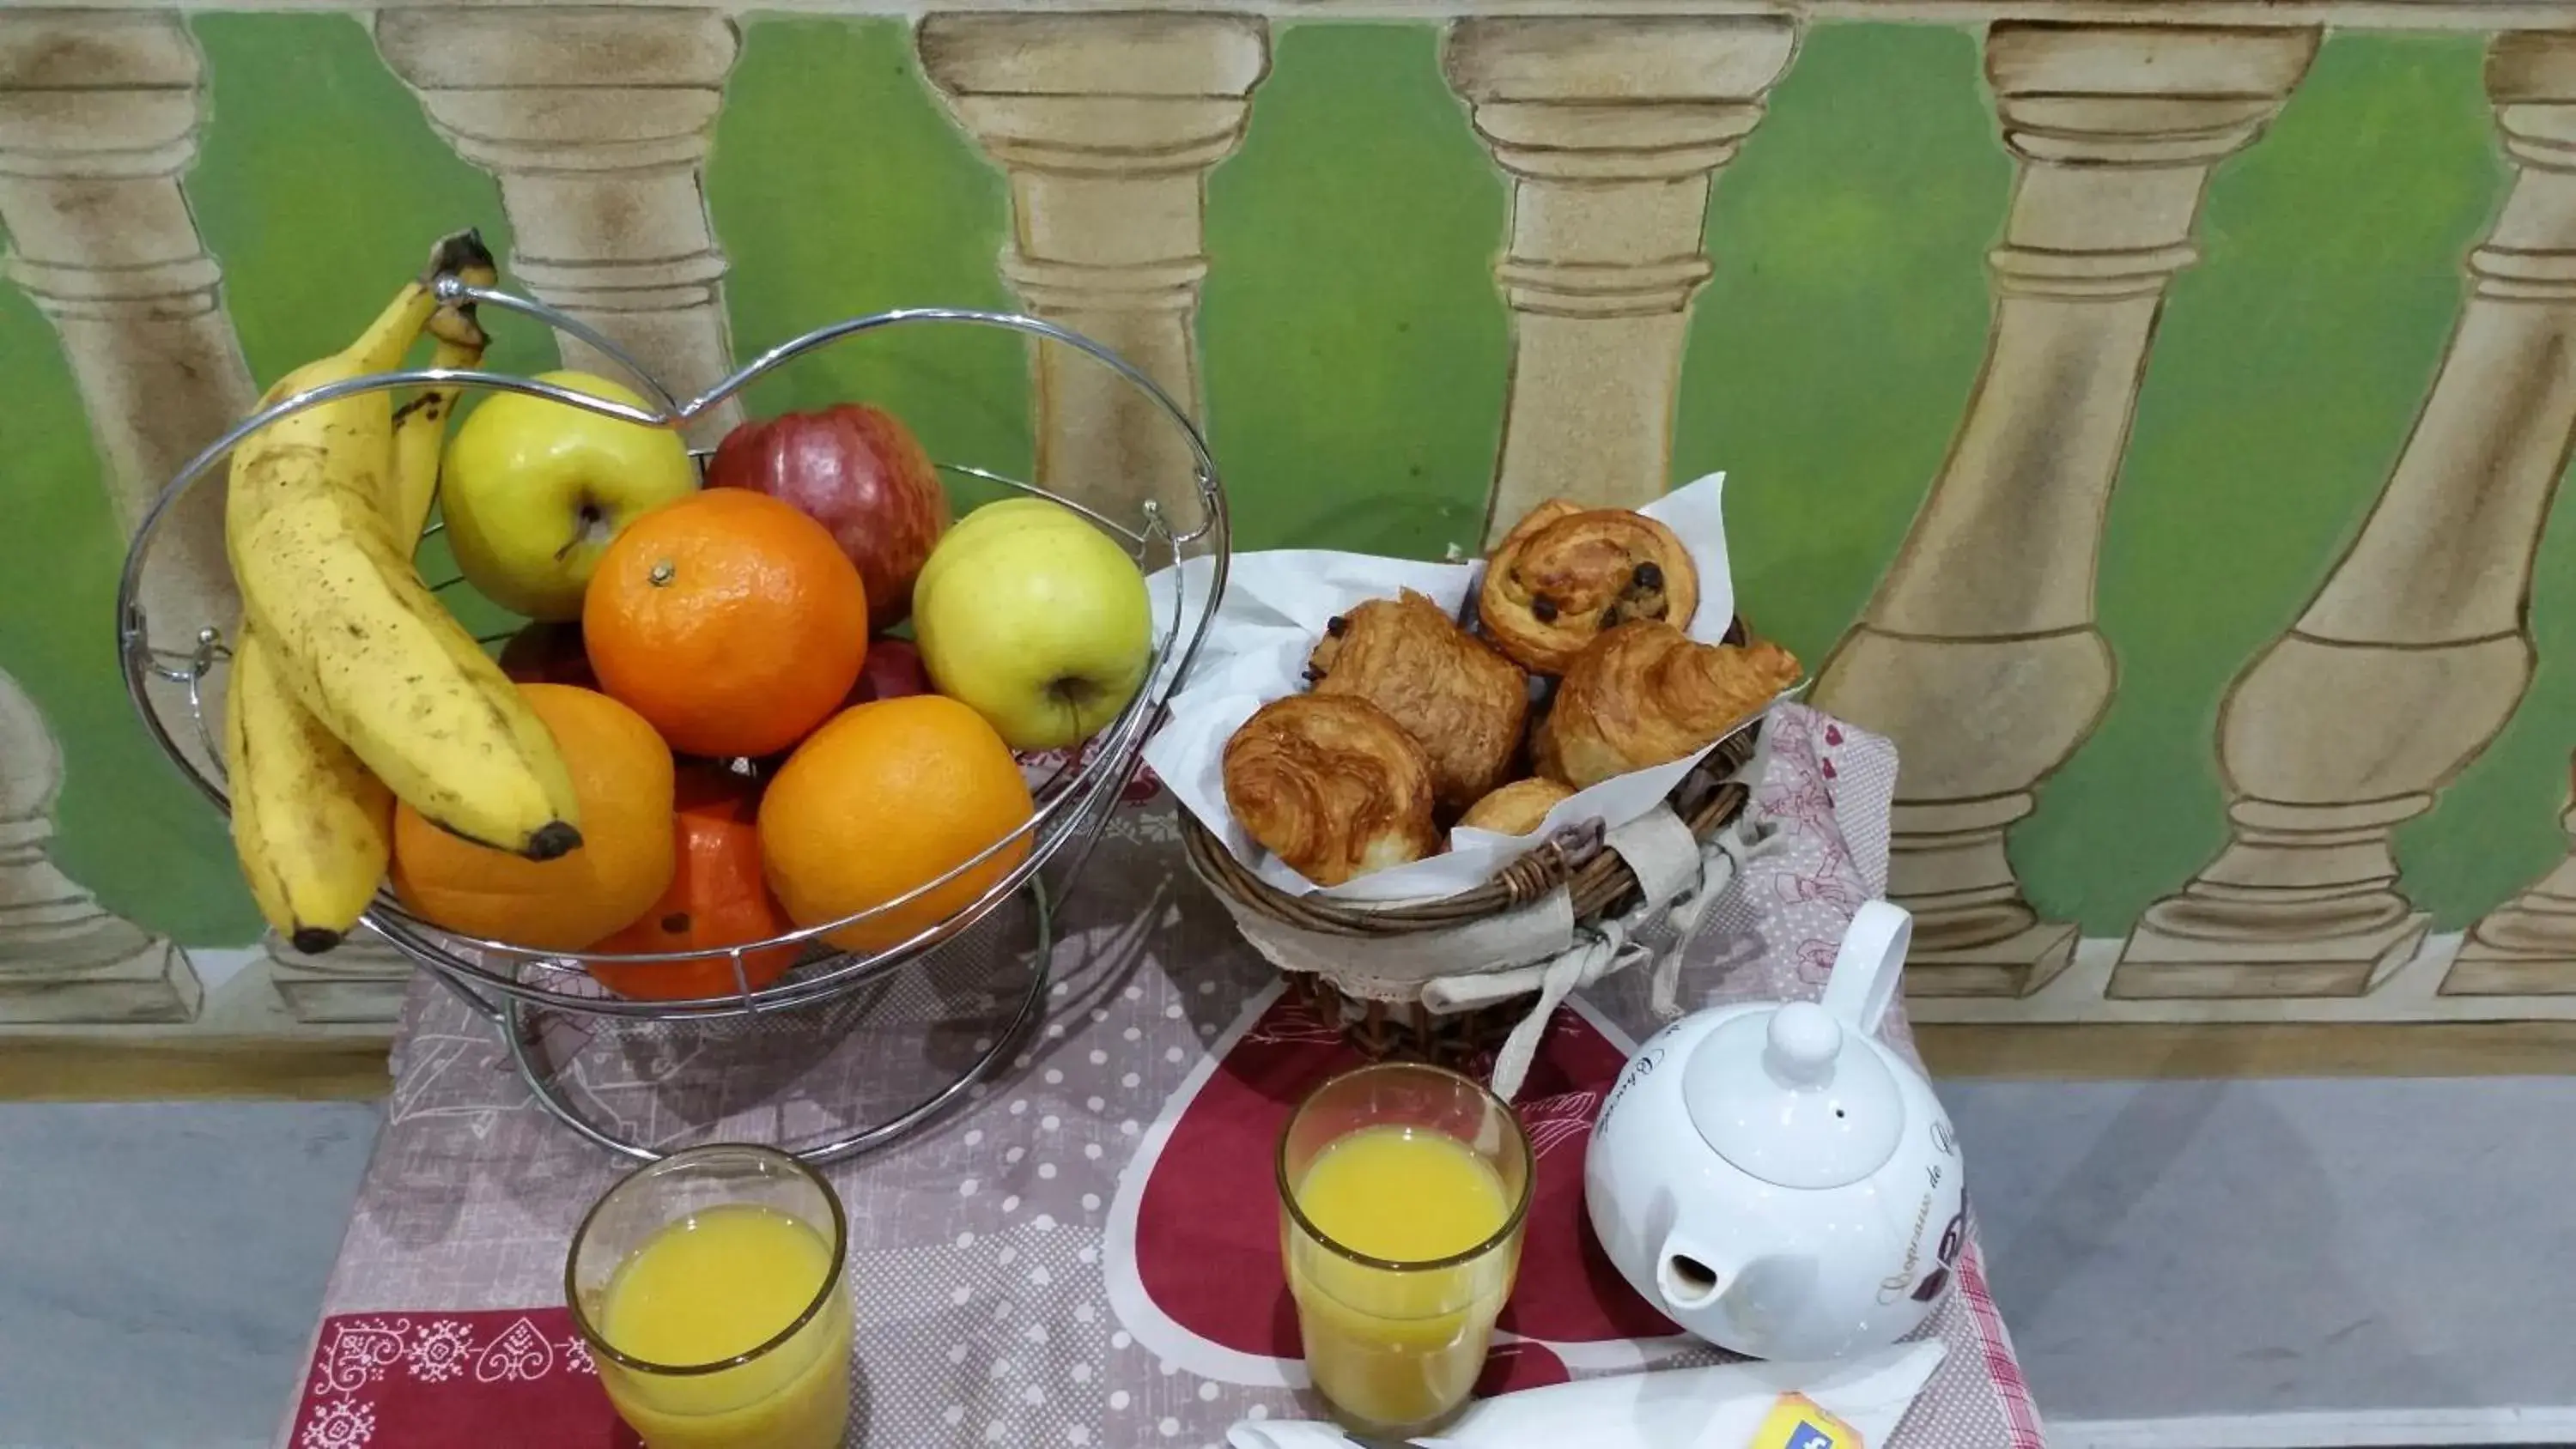 Buffet breakfast in Hotel la Perle Montparnasse